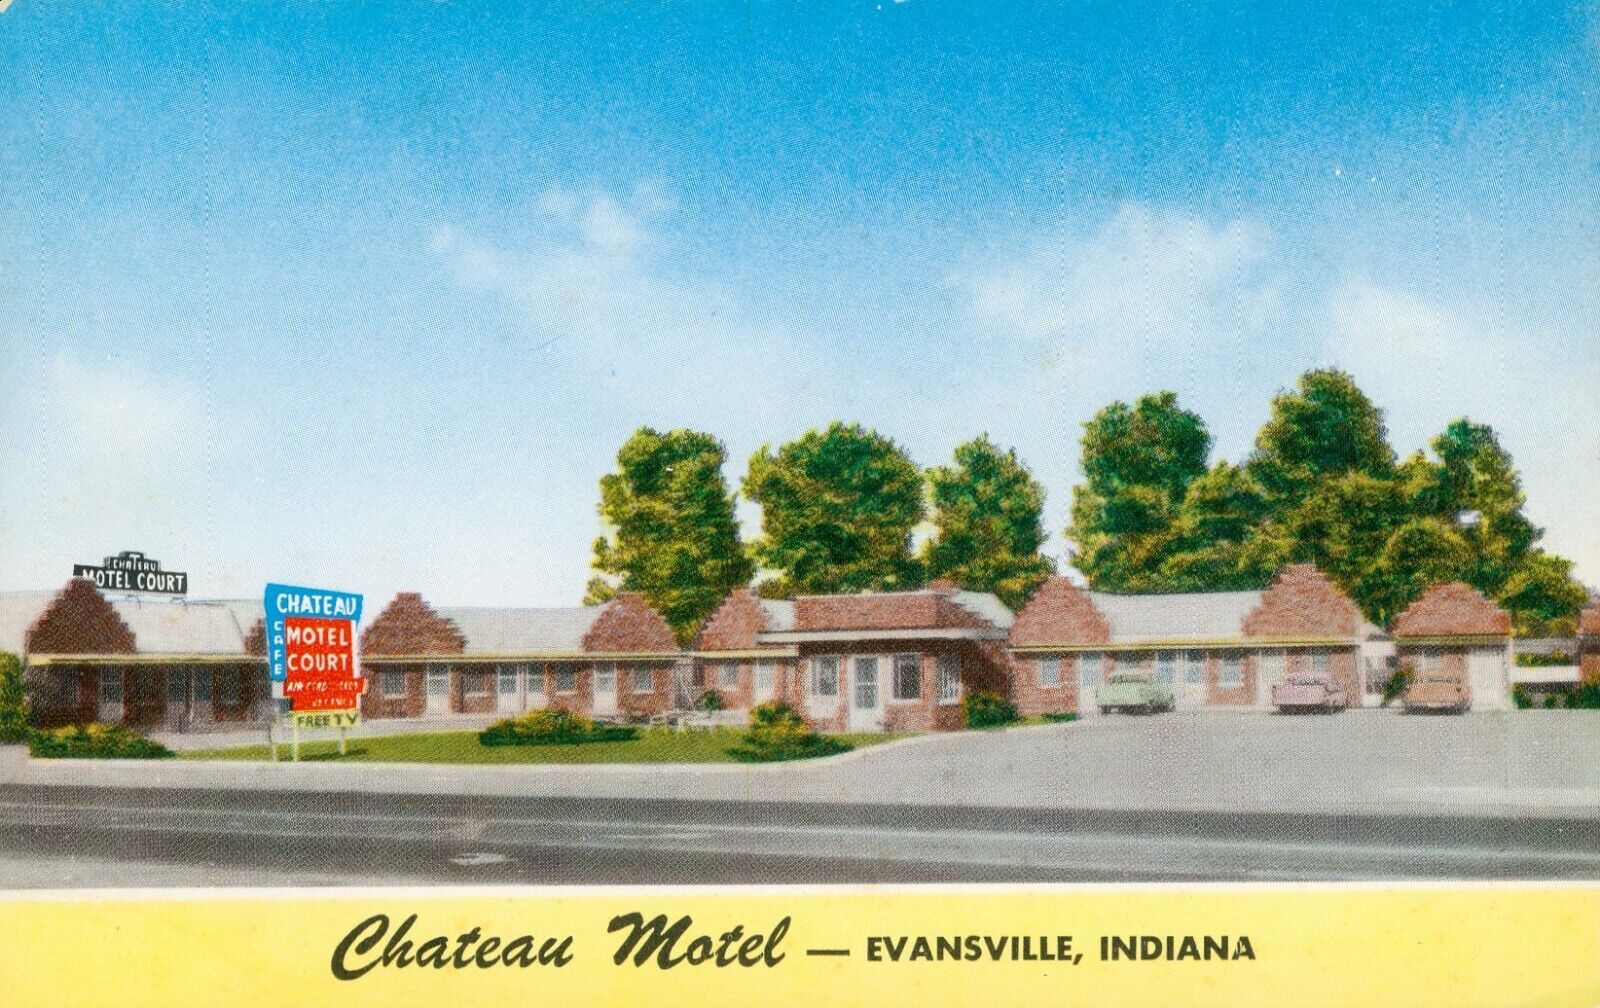 Chateau Motel, Evansville, Indiana - Vintage Postcard - Motor Court Roadside USA